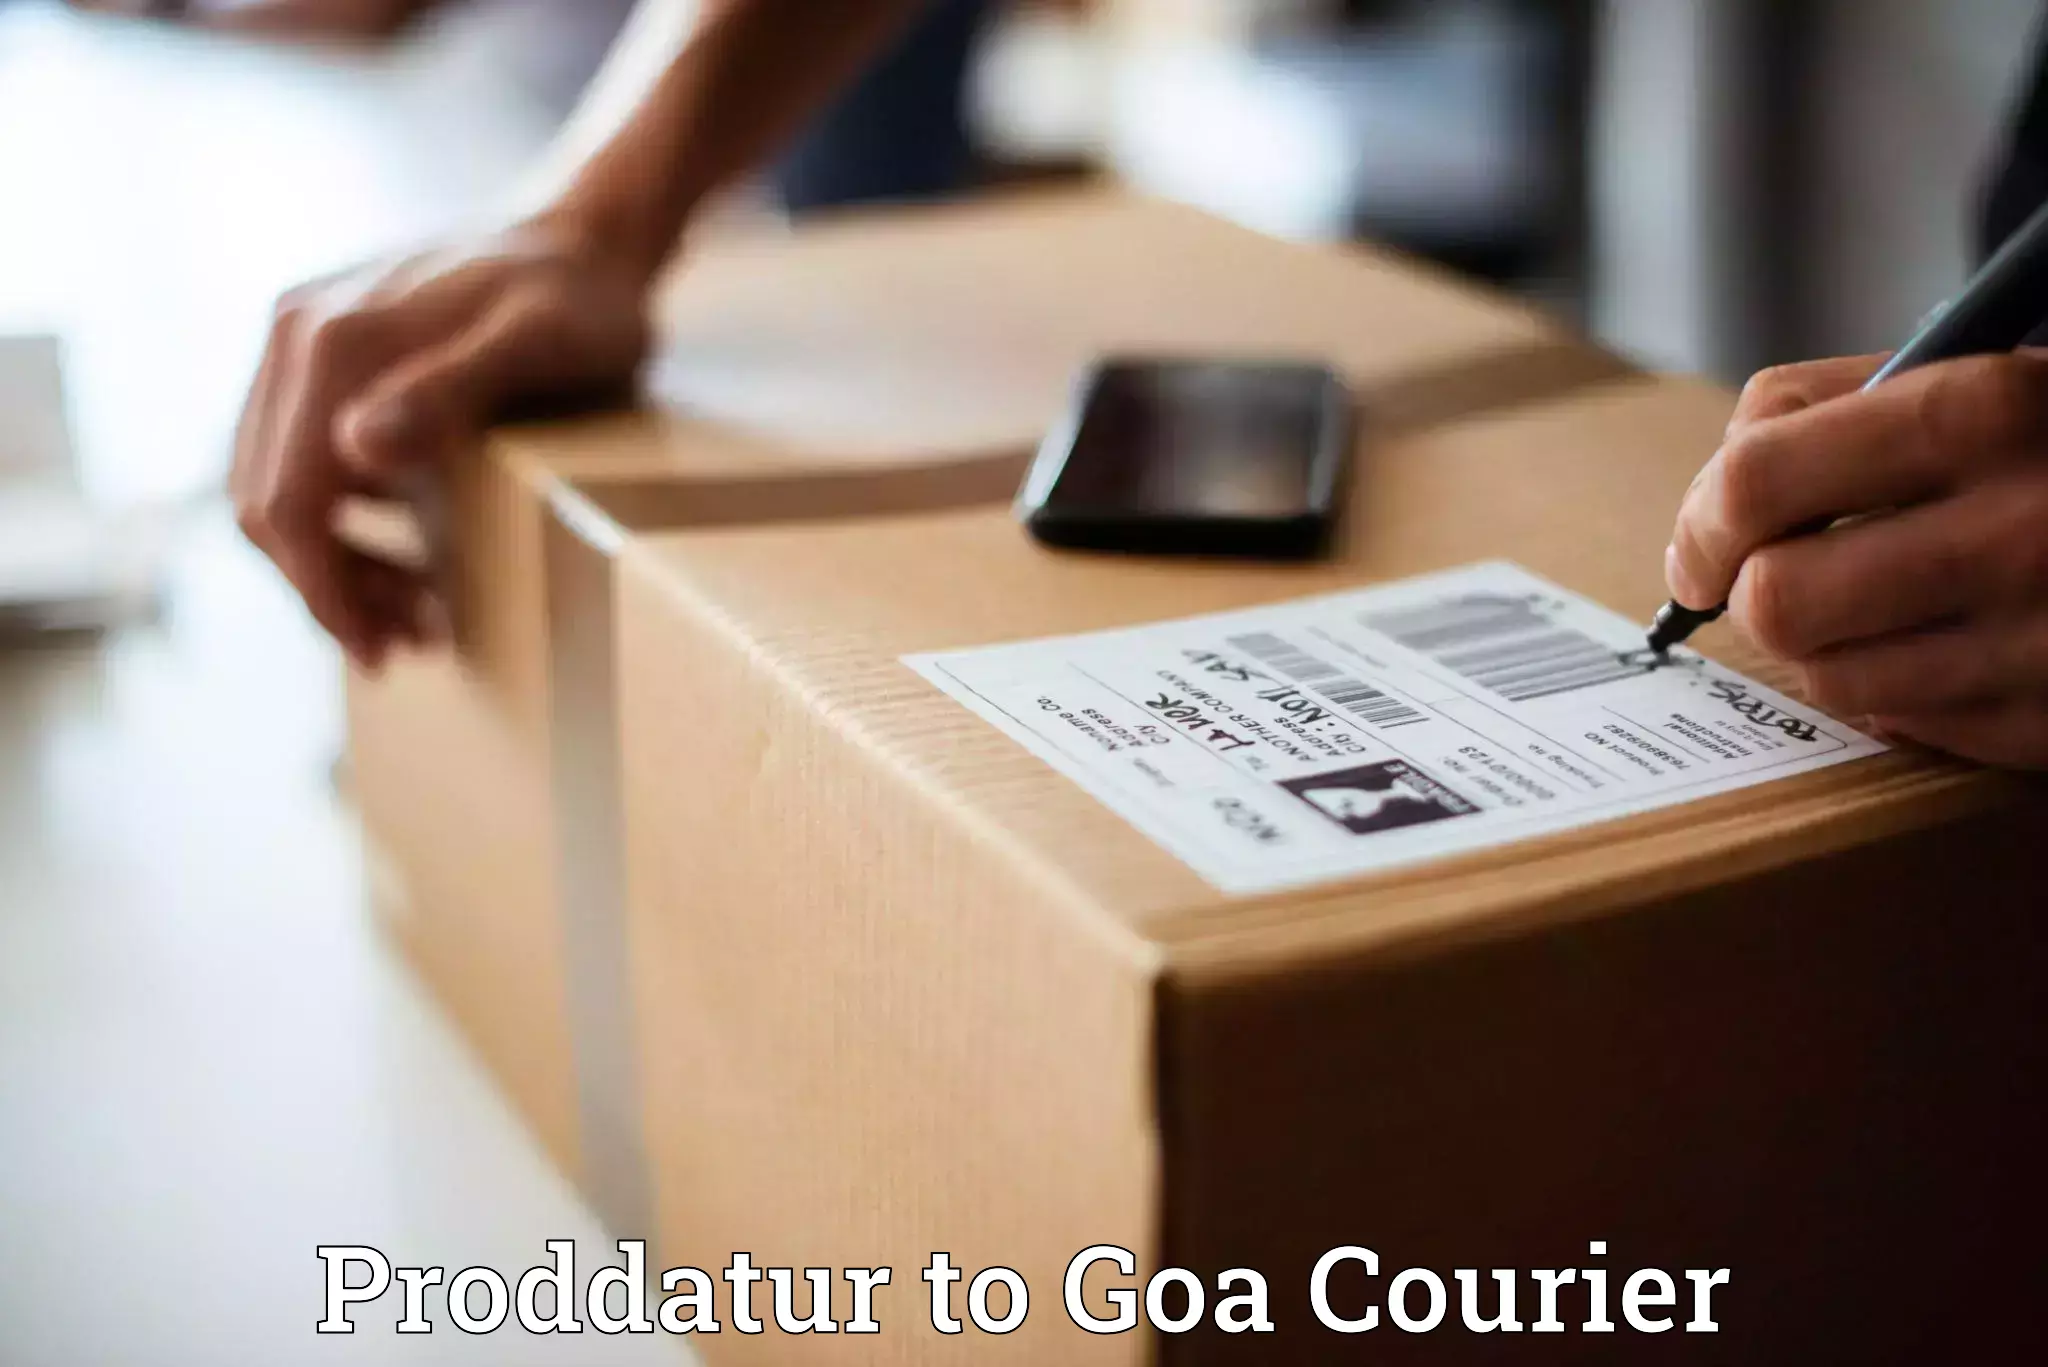 Bulk shipment Proddatur to Goa